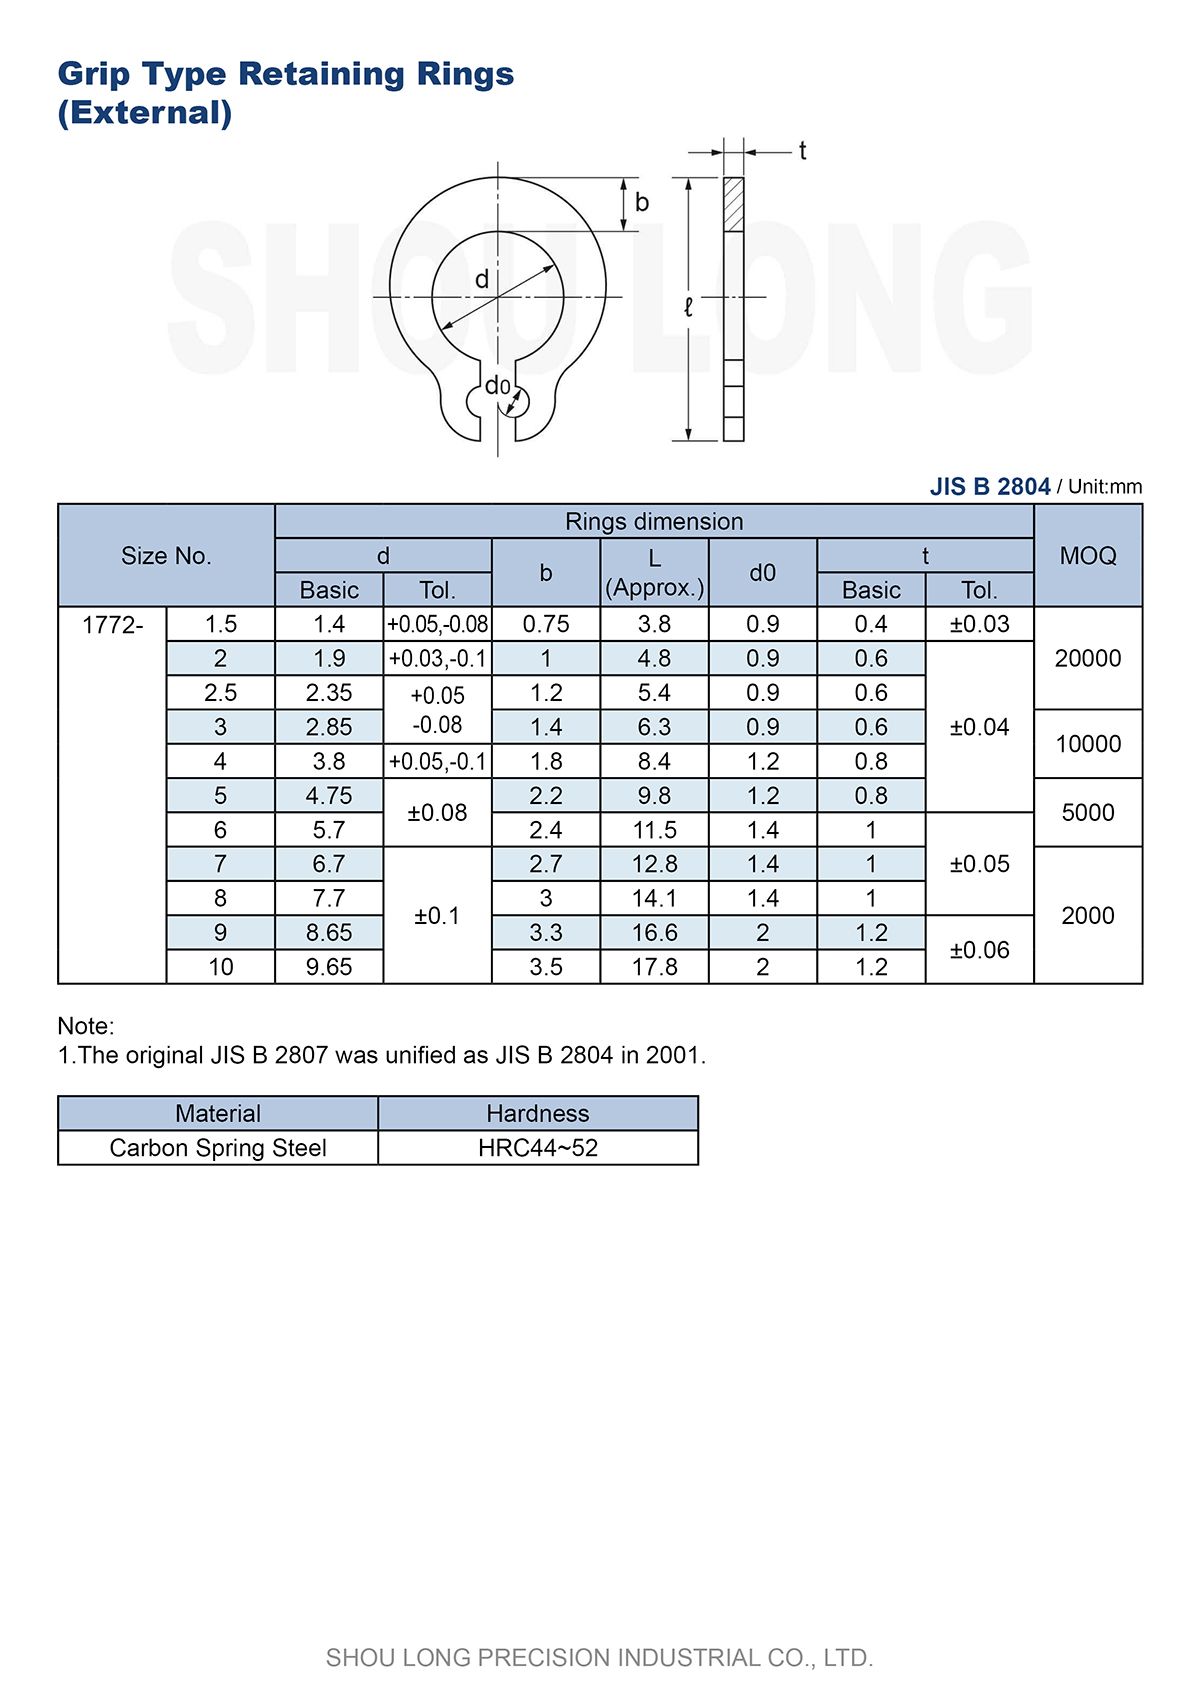 Spesifikasi Cincin Penahan Jenis Grip Metrik JIS untuk Poros B2804